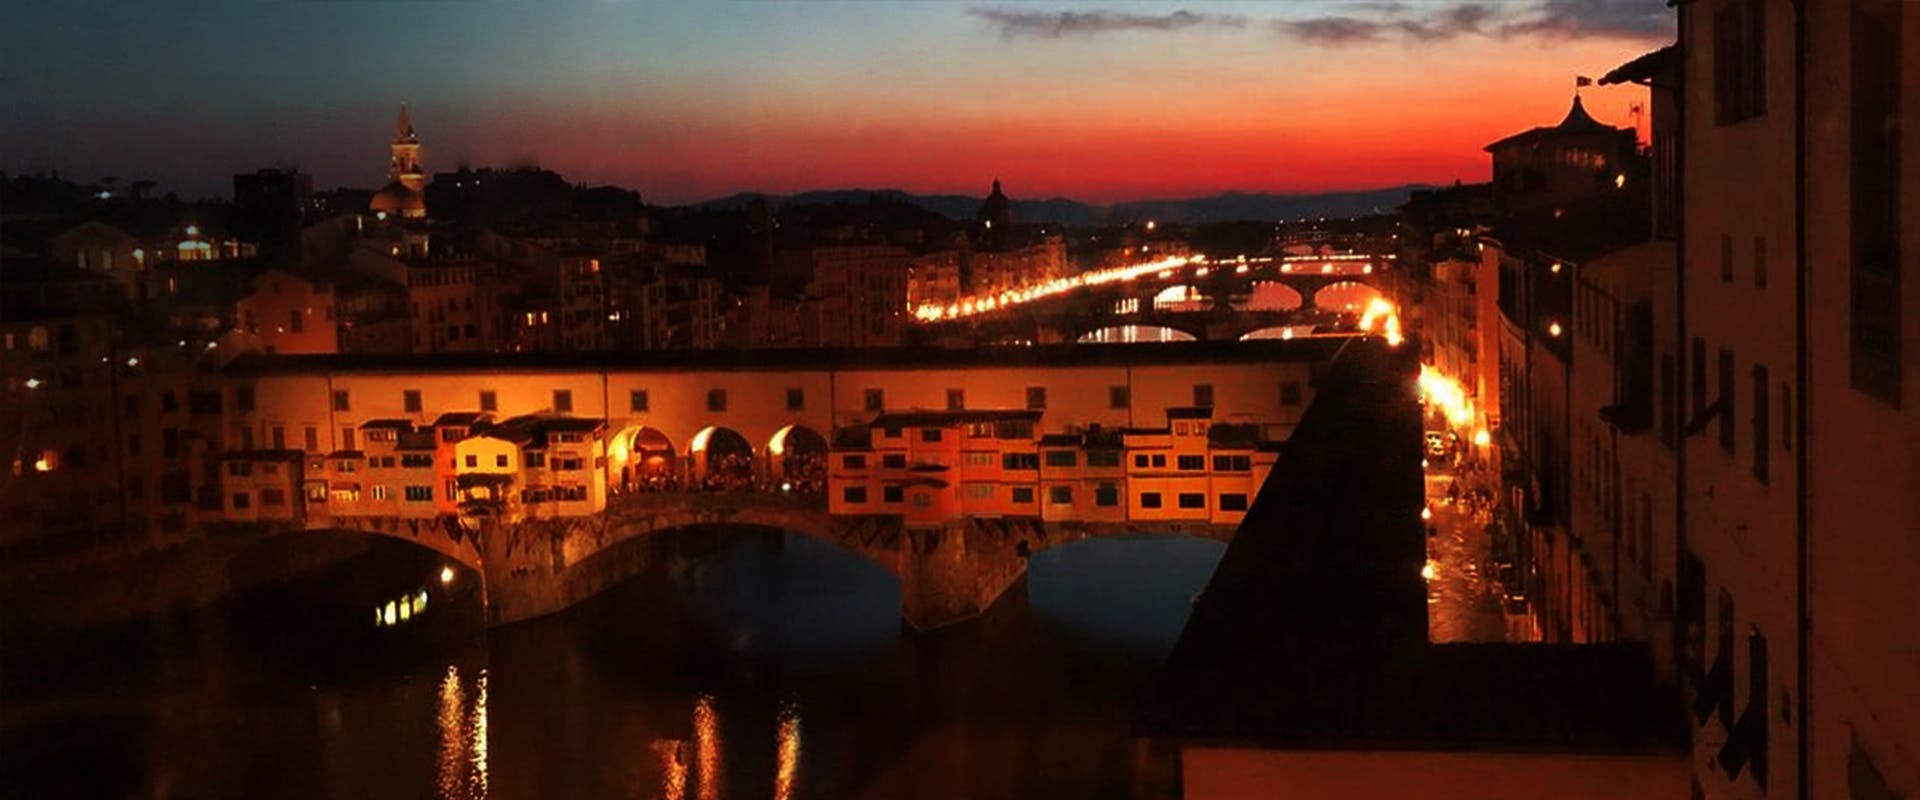 Ponte Vecchio e Vasariano in notturna